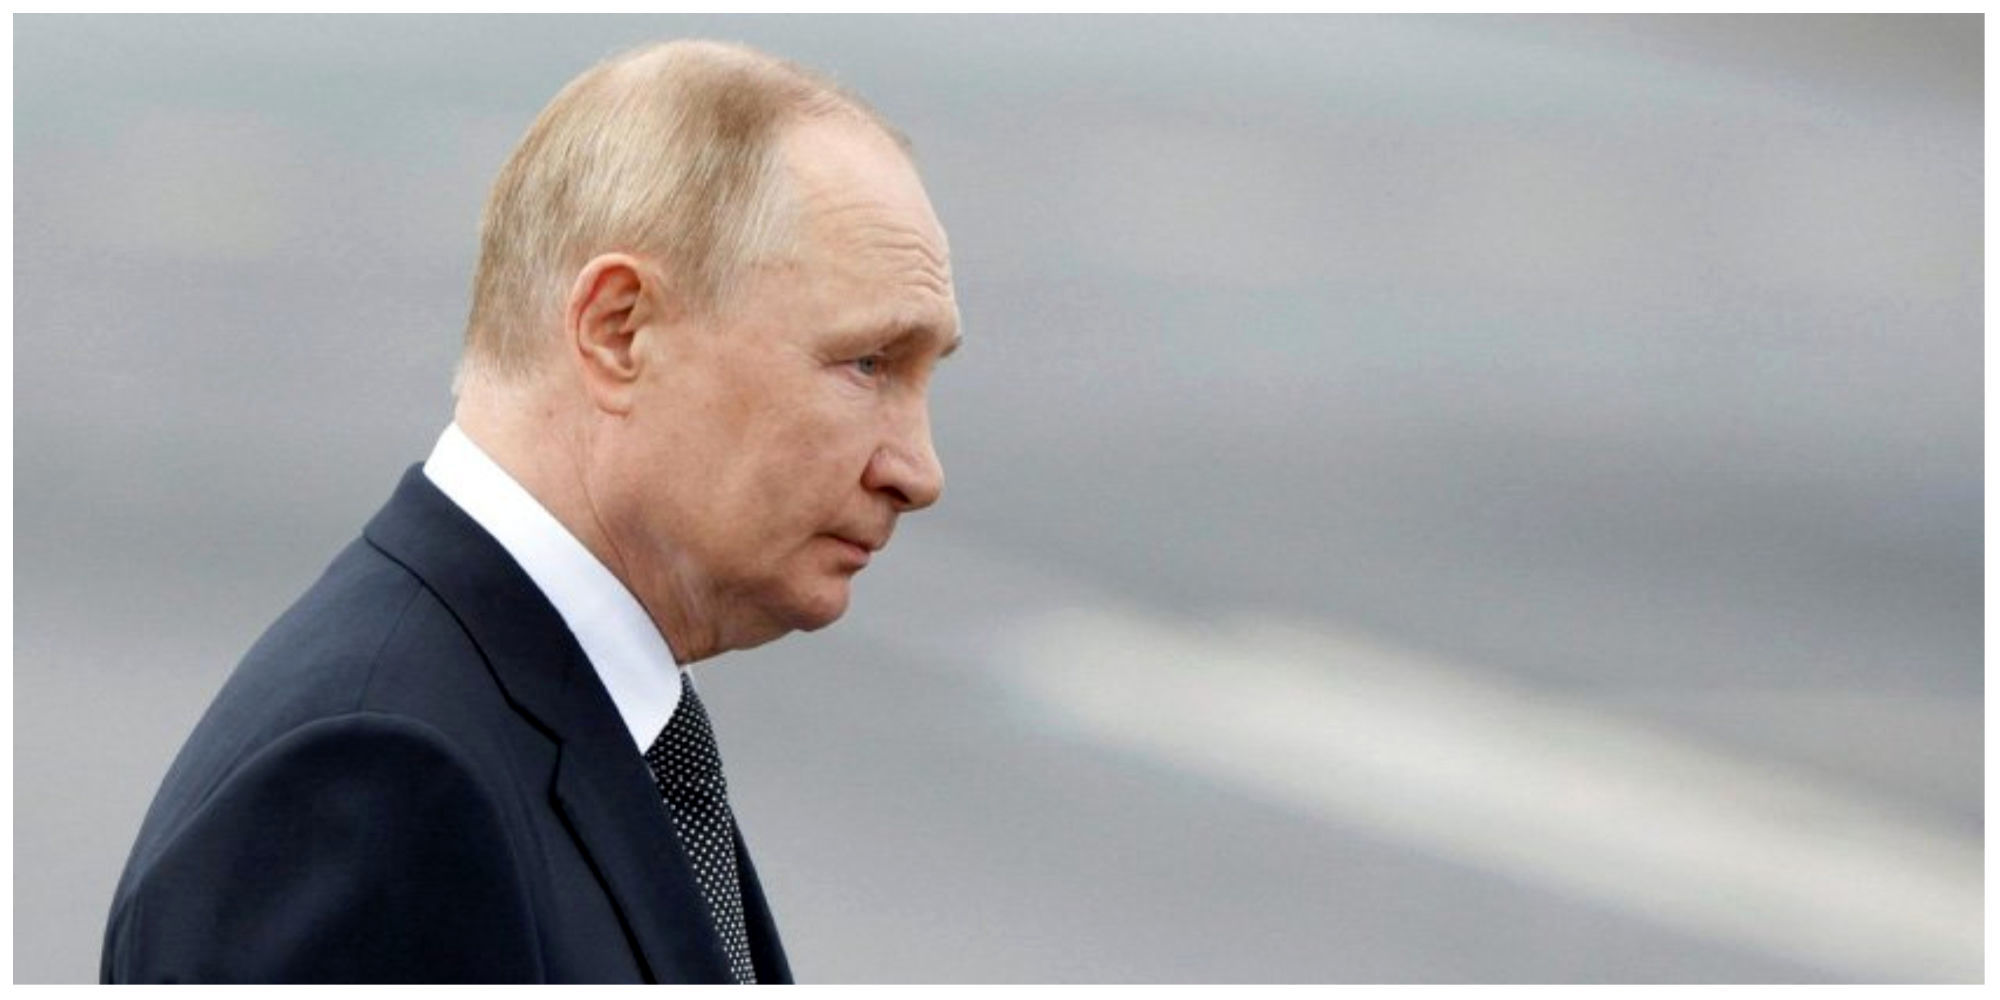 خبرهای ضد ونقیض از حال عمومی پوتین/ آقای رئیس جمهور به سختی غذا می خورد